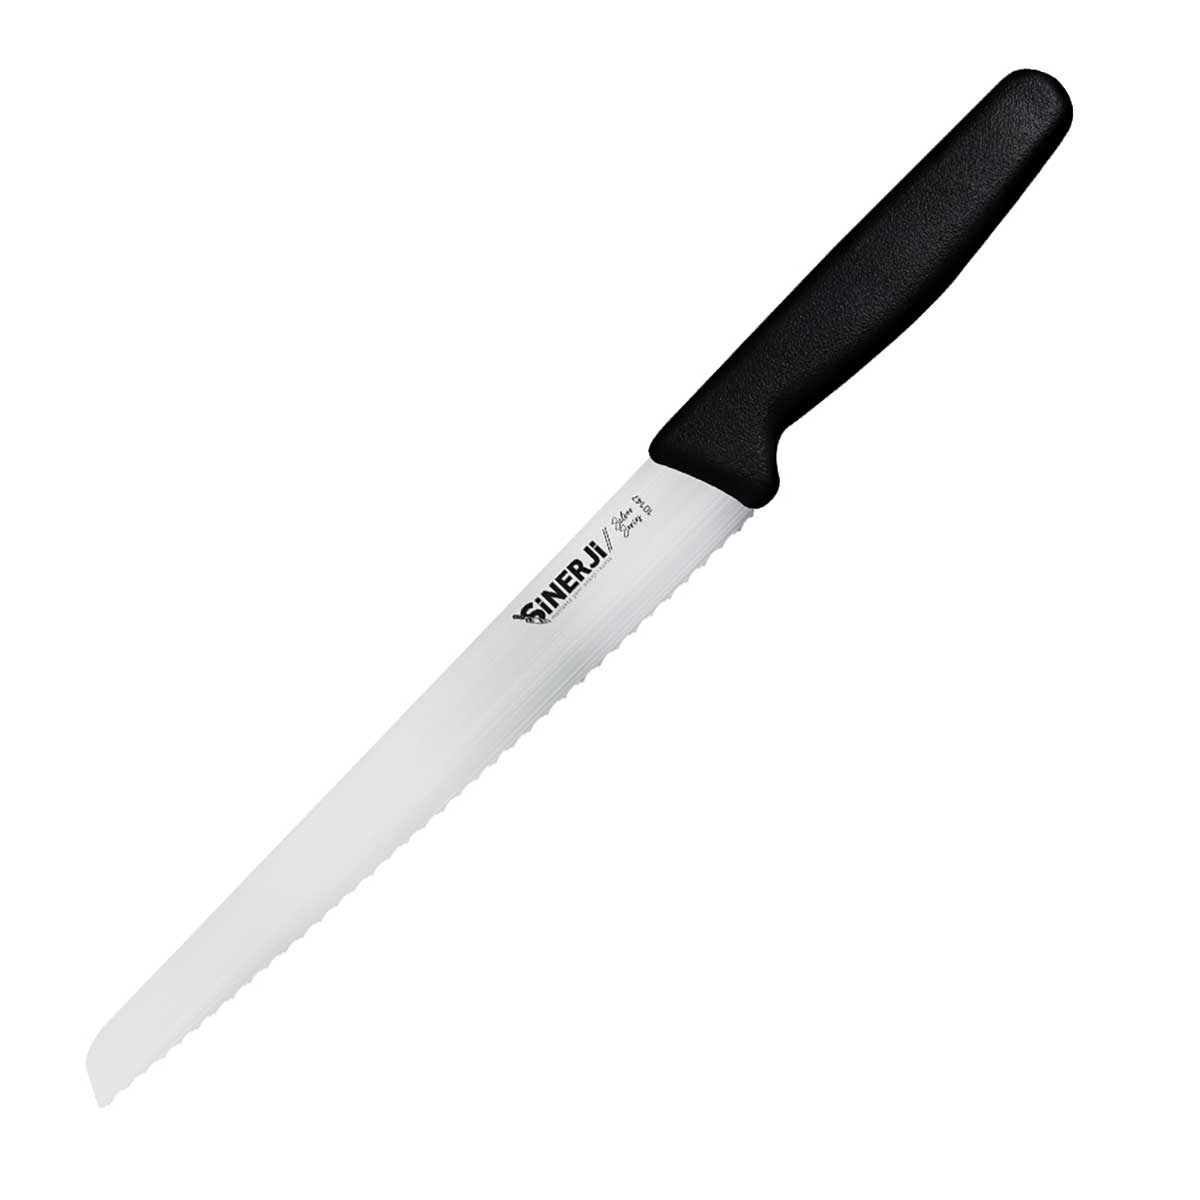 Sinerji Silver Orta Dişli Ekmek Bıçağı – 10147 Ekmek Bıçağı